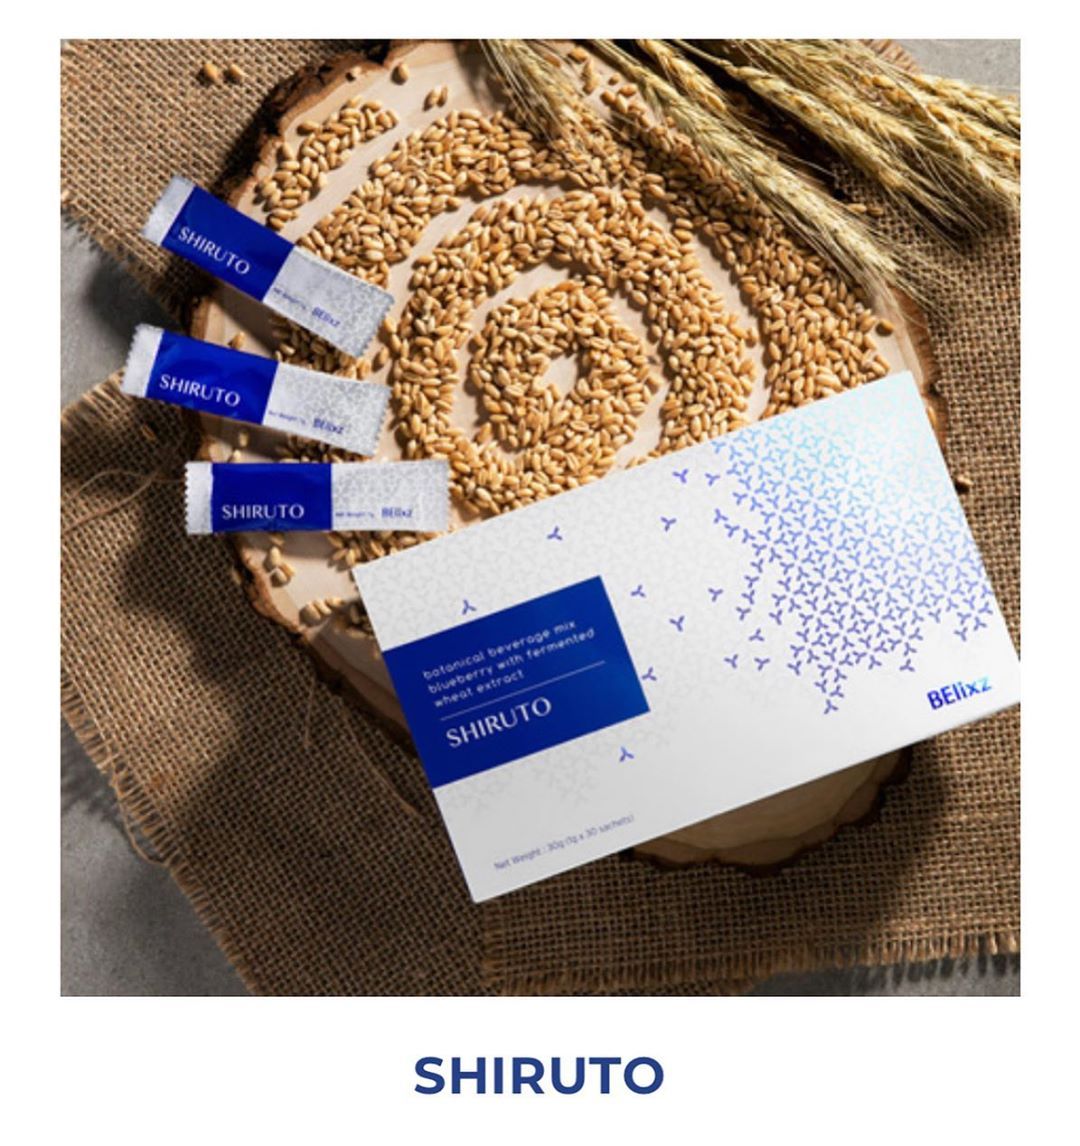 Shiruto ingredients